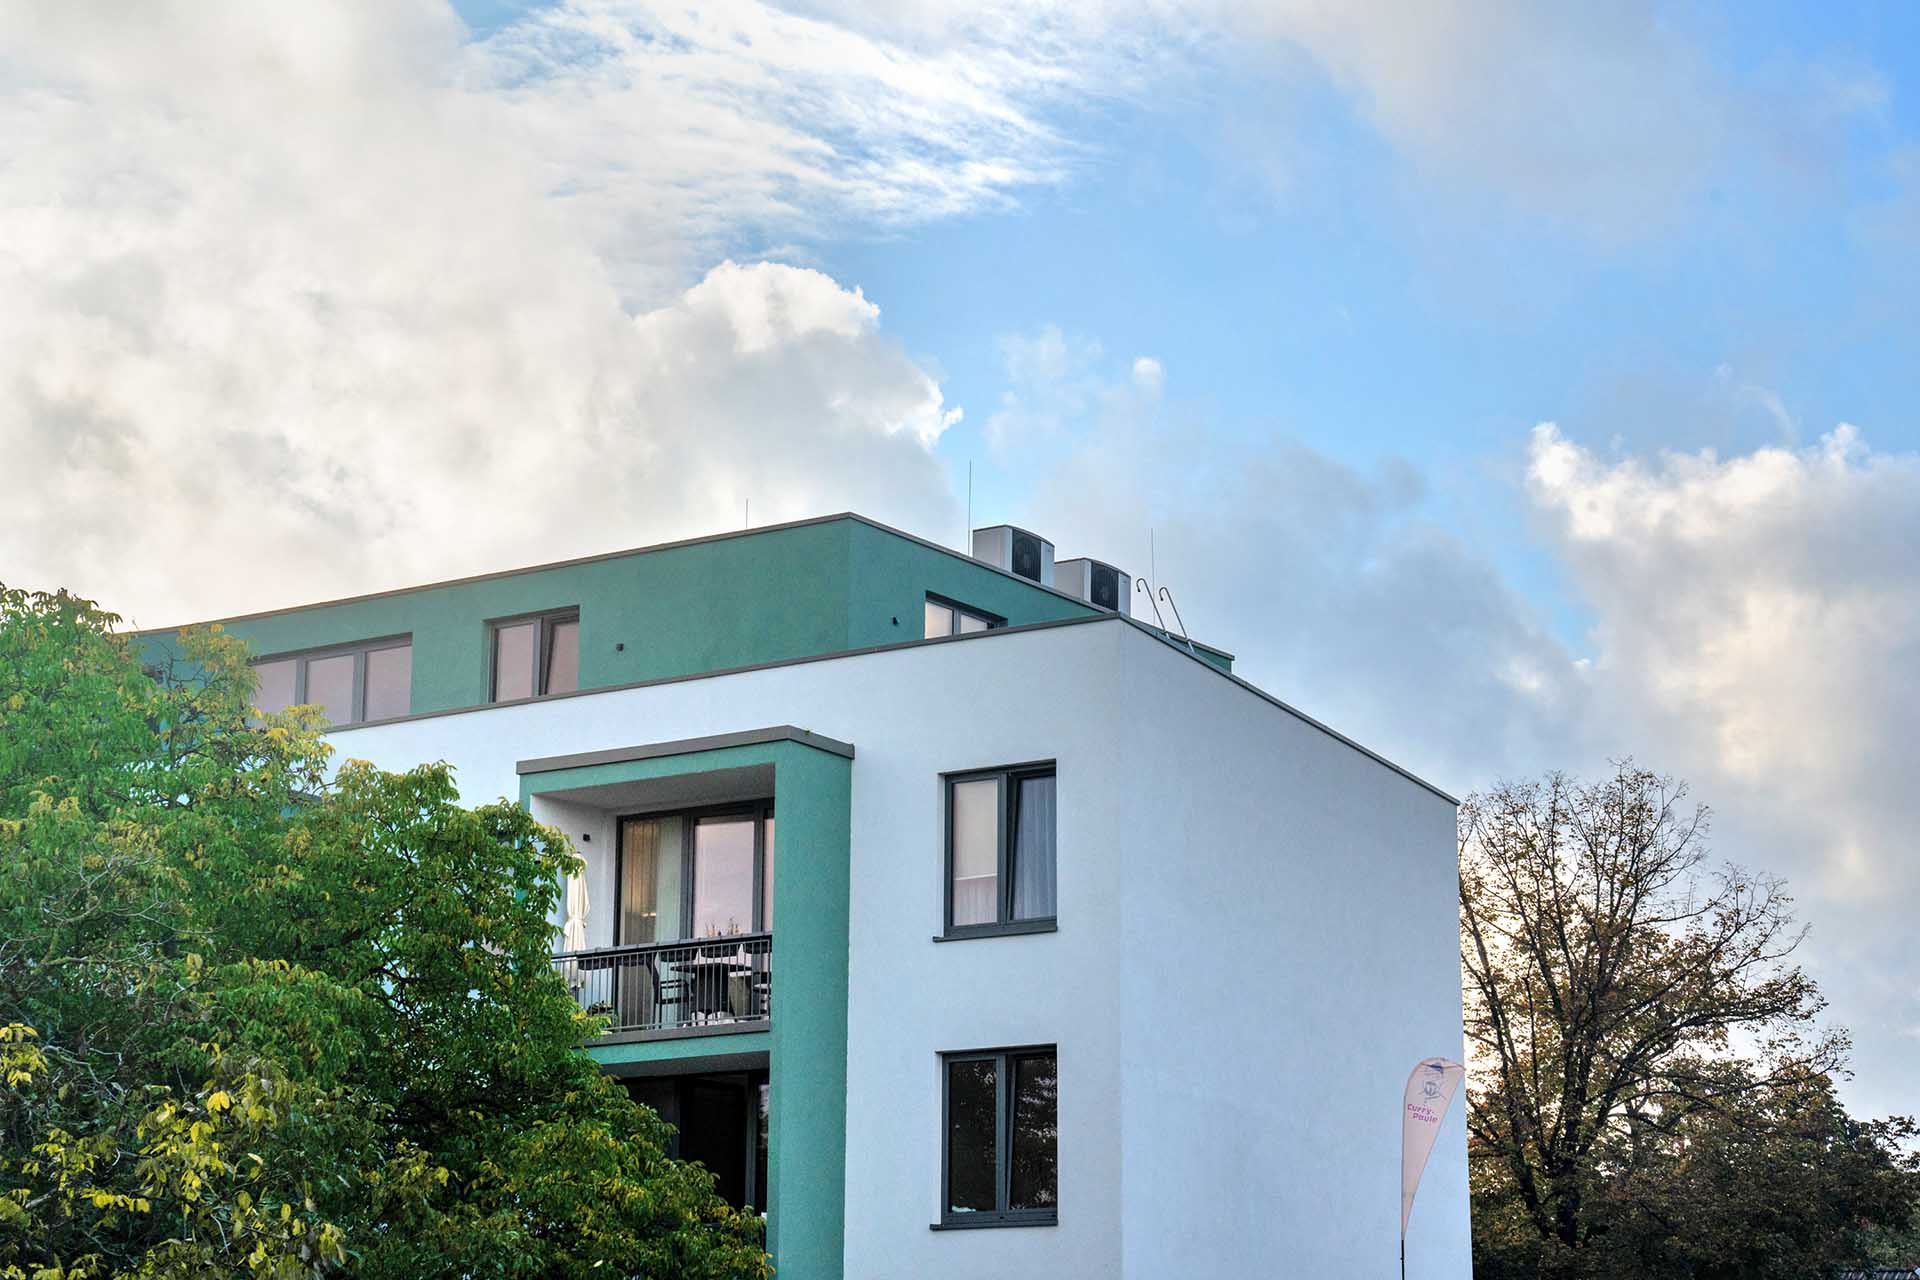 Mehrfamilienhaus in Berlin-Rudow mit Wärmepumpen auf dem Dach